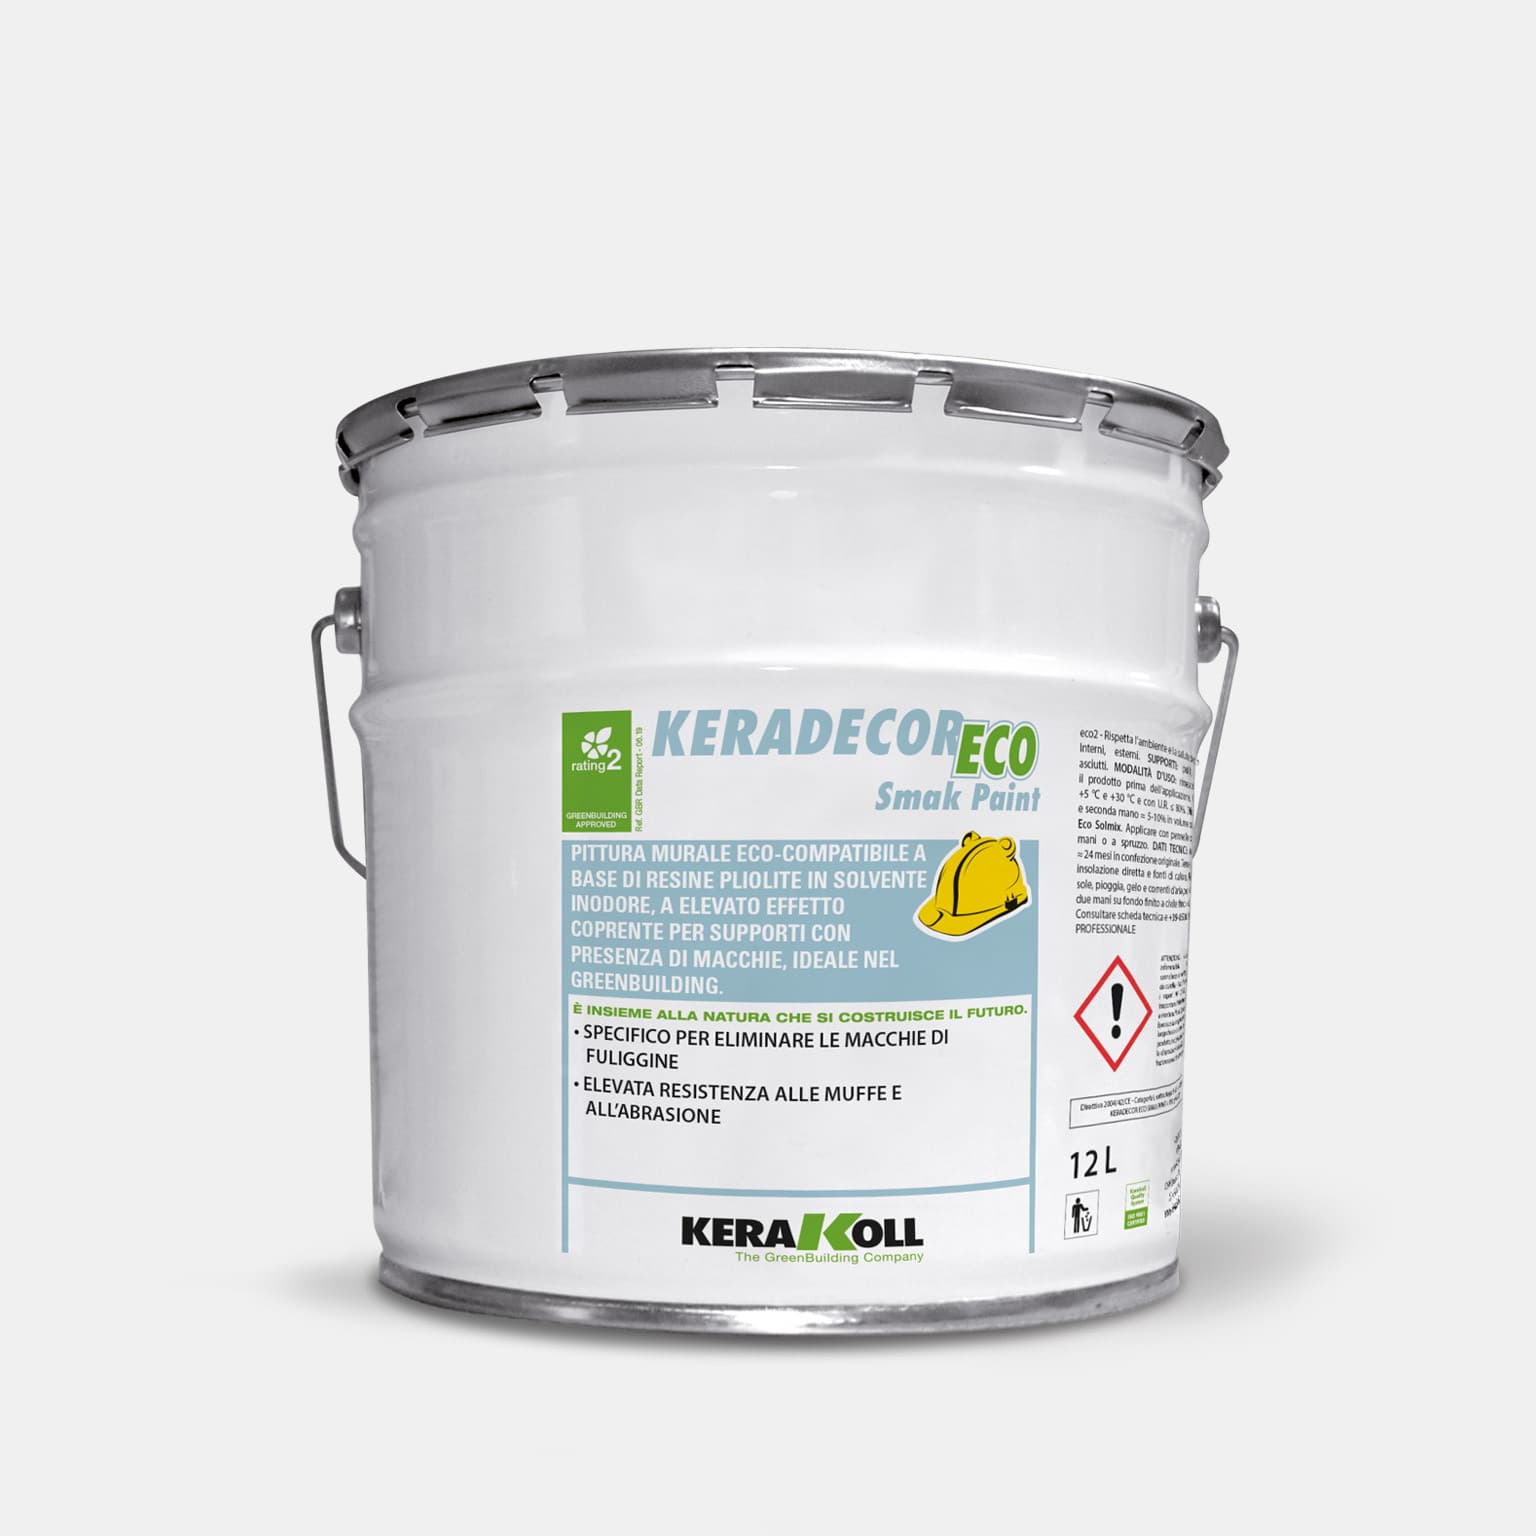 Kerakoll Keradecor Eco Smak Paint különösen alkalmas olyan felületekhez, melyeken nikotin, hamu, szulfátok és más, felületen terjedő anyag van lerakódva.